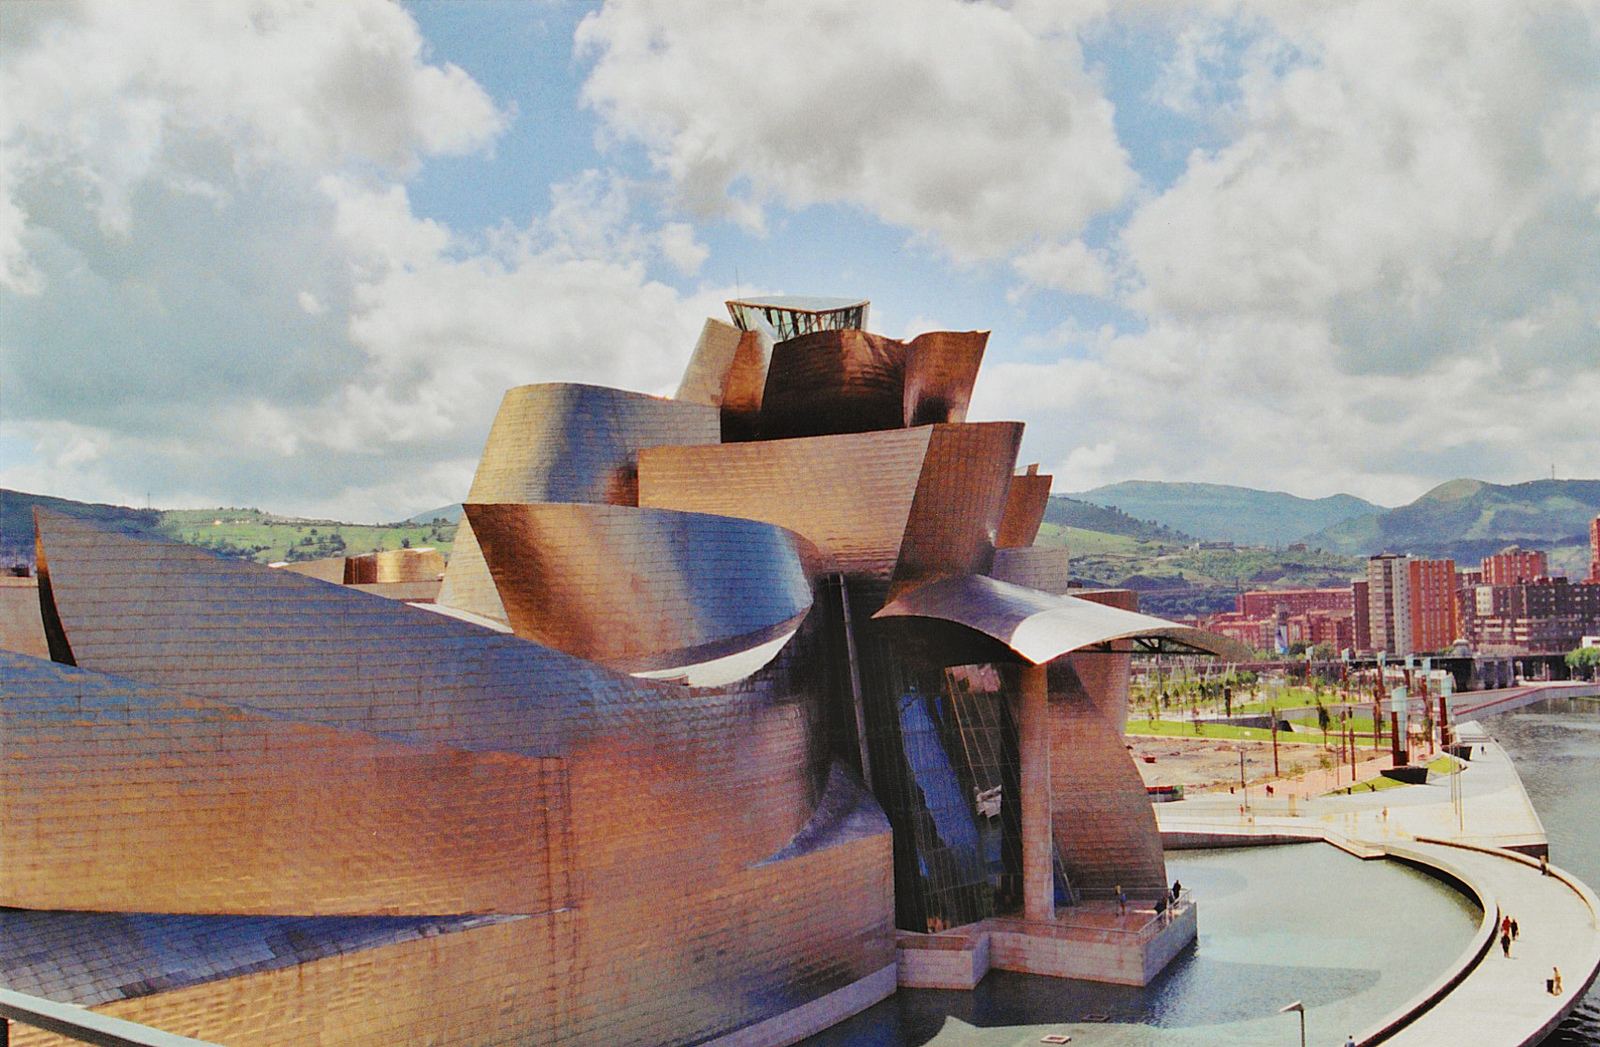 The Guggenheim in Bilbao © SarahTz